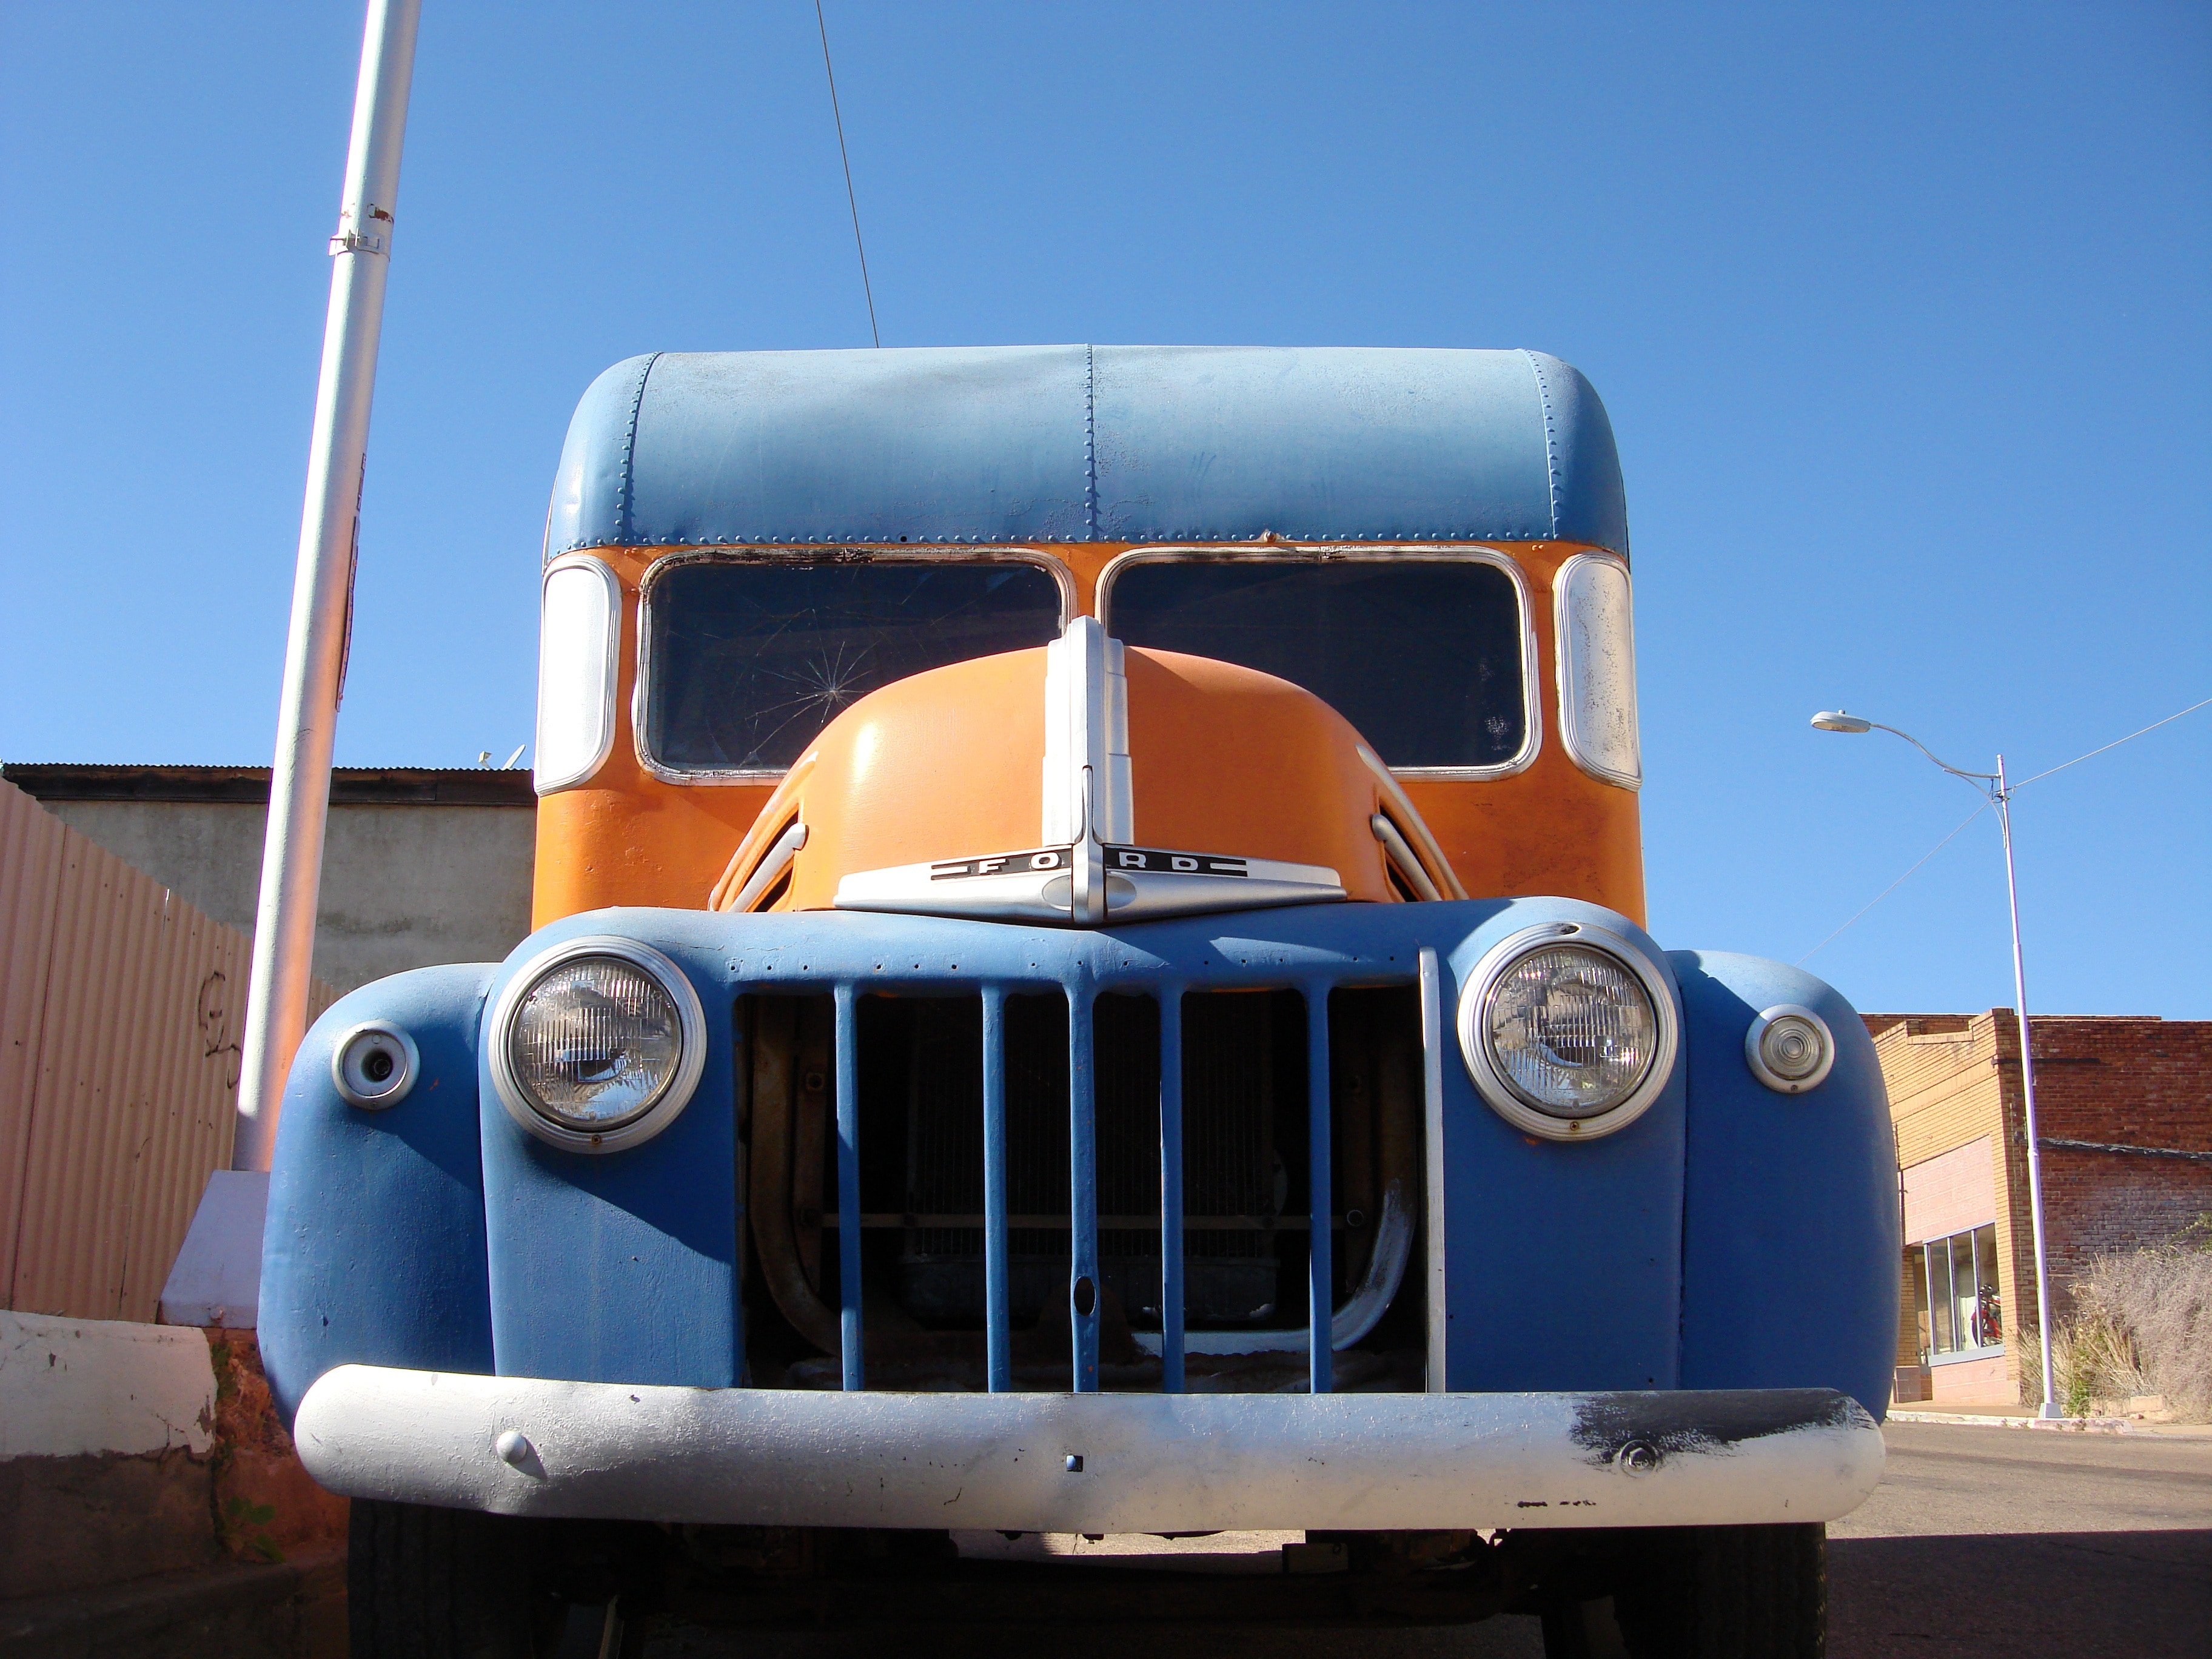 blue and orange vehicle